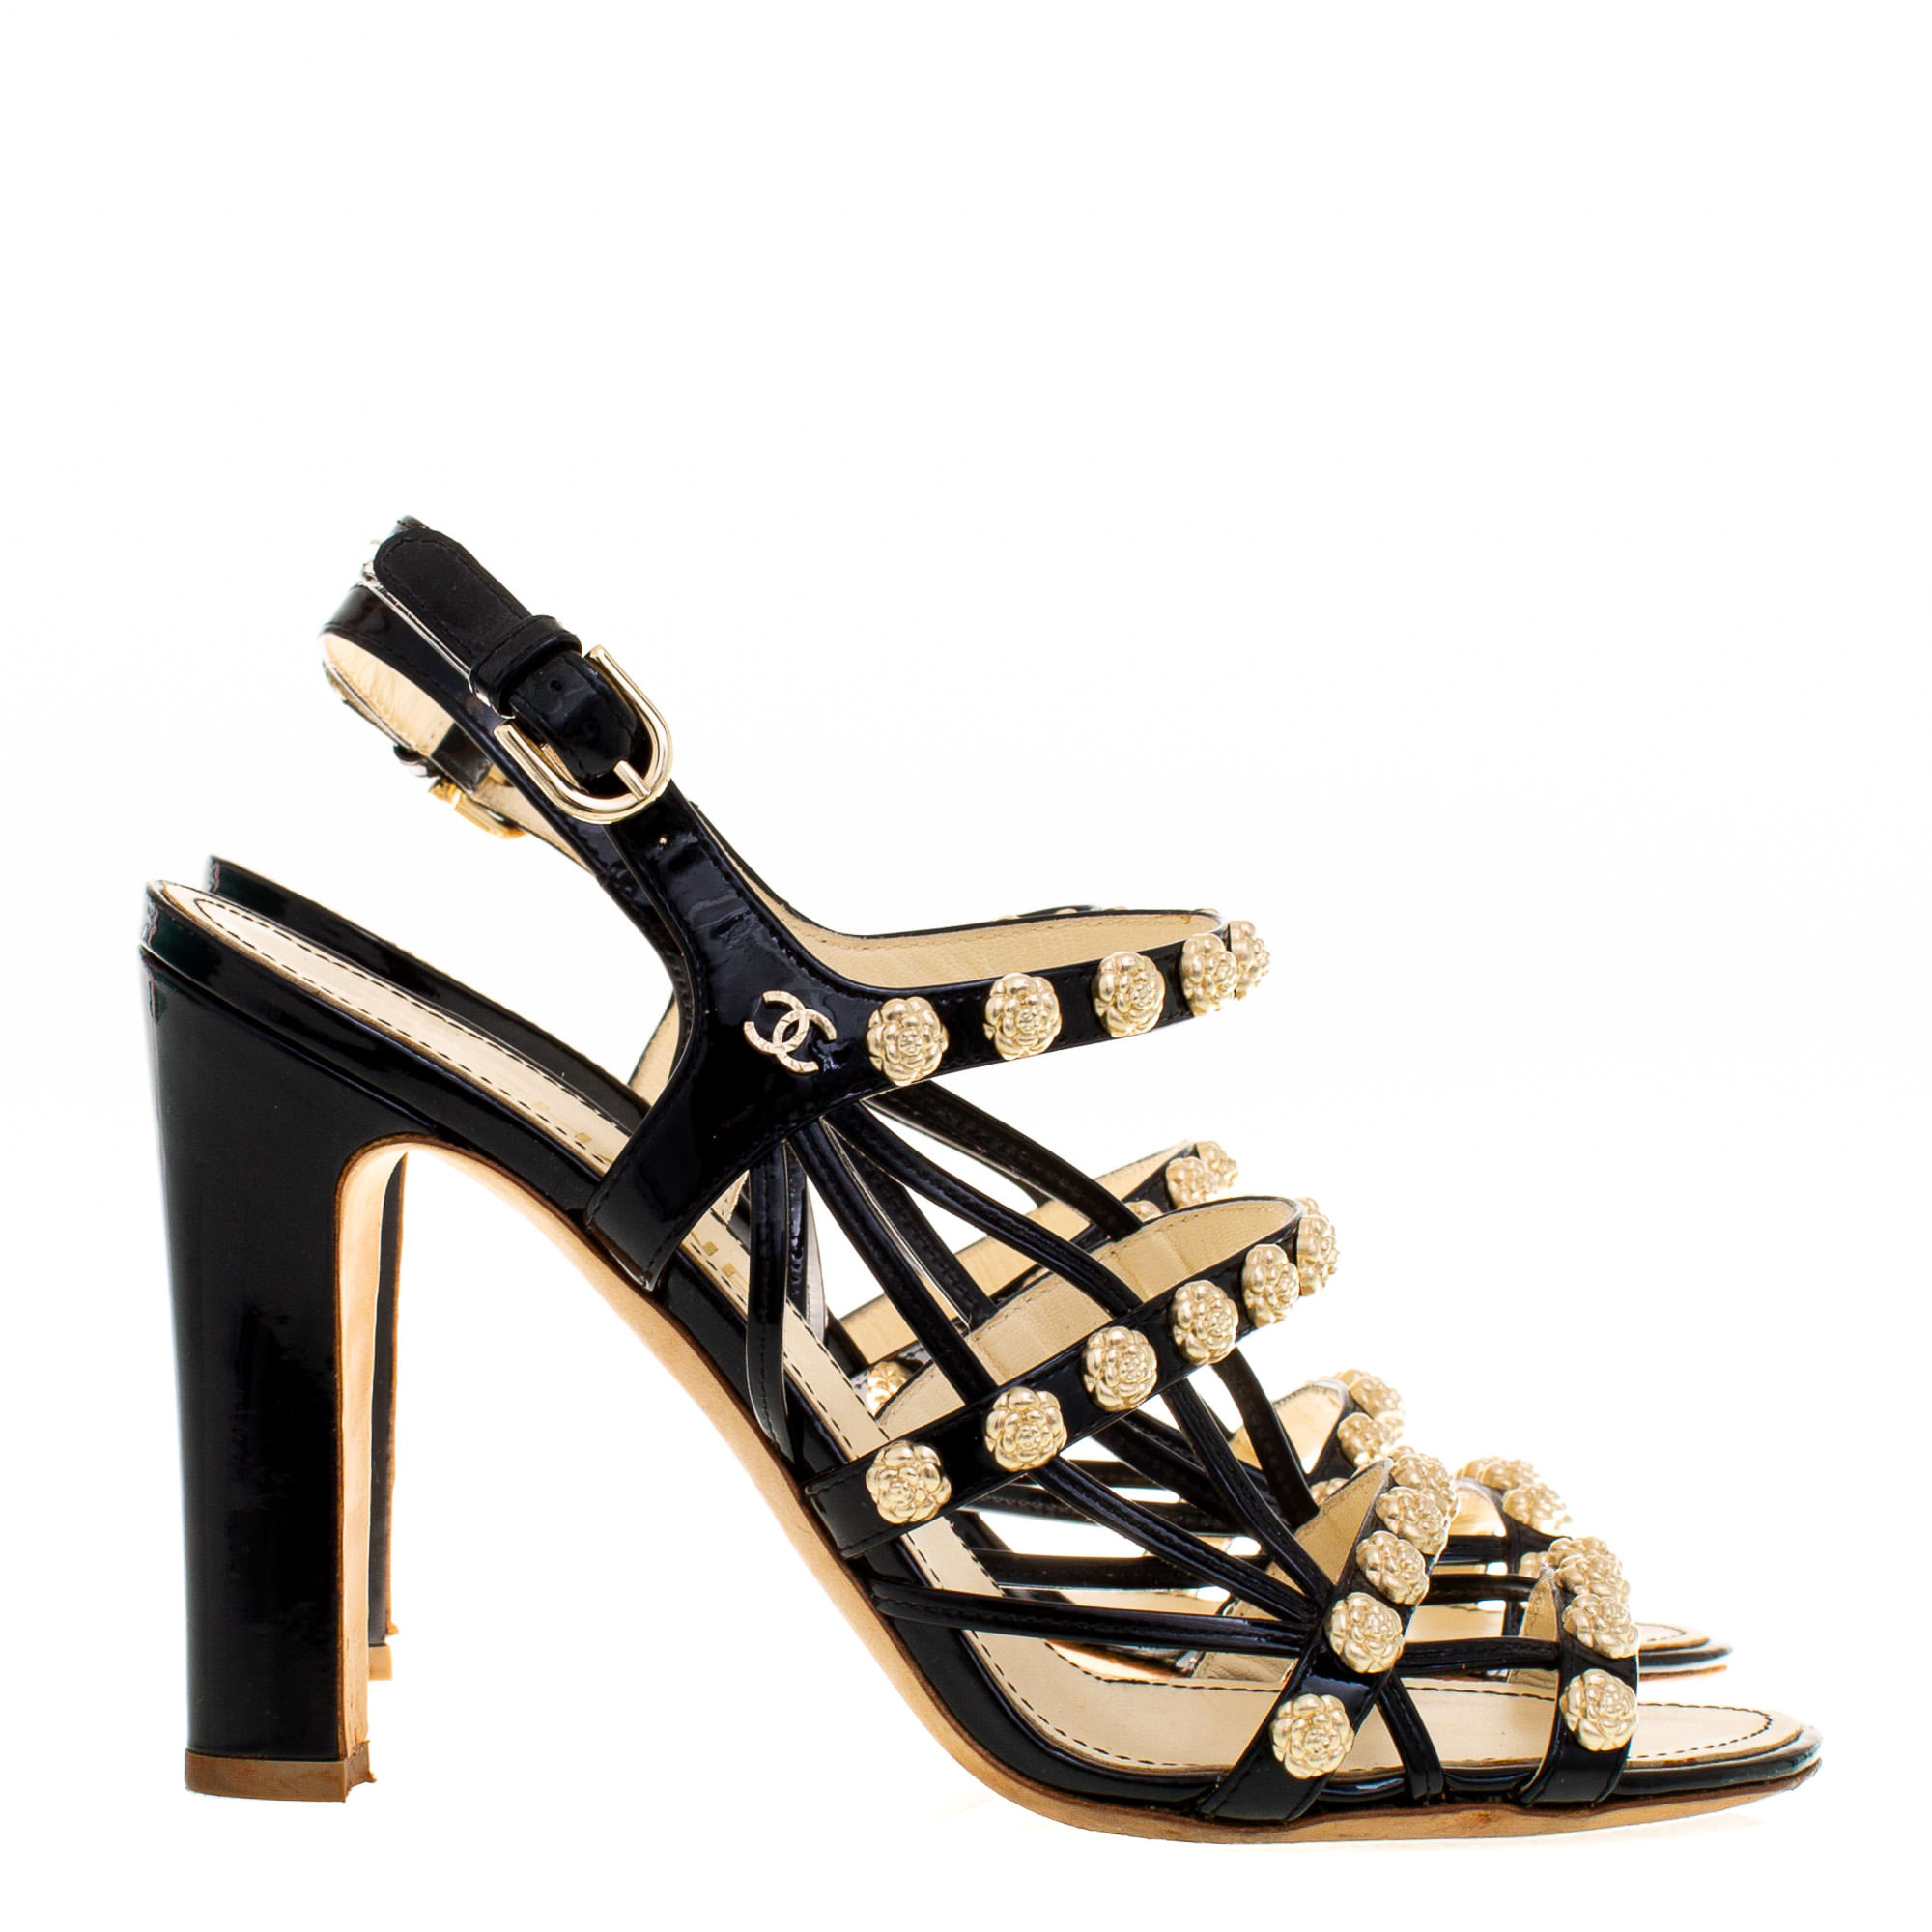 Sandália Chanel Preta e Dourada | Brechó de luxo - Prettynew